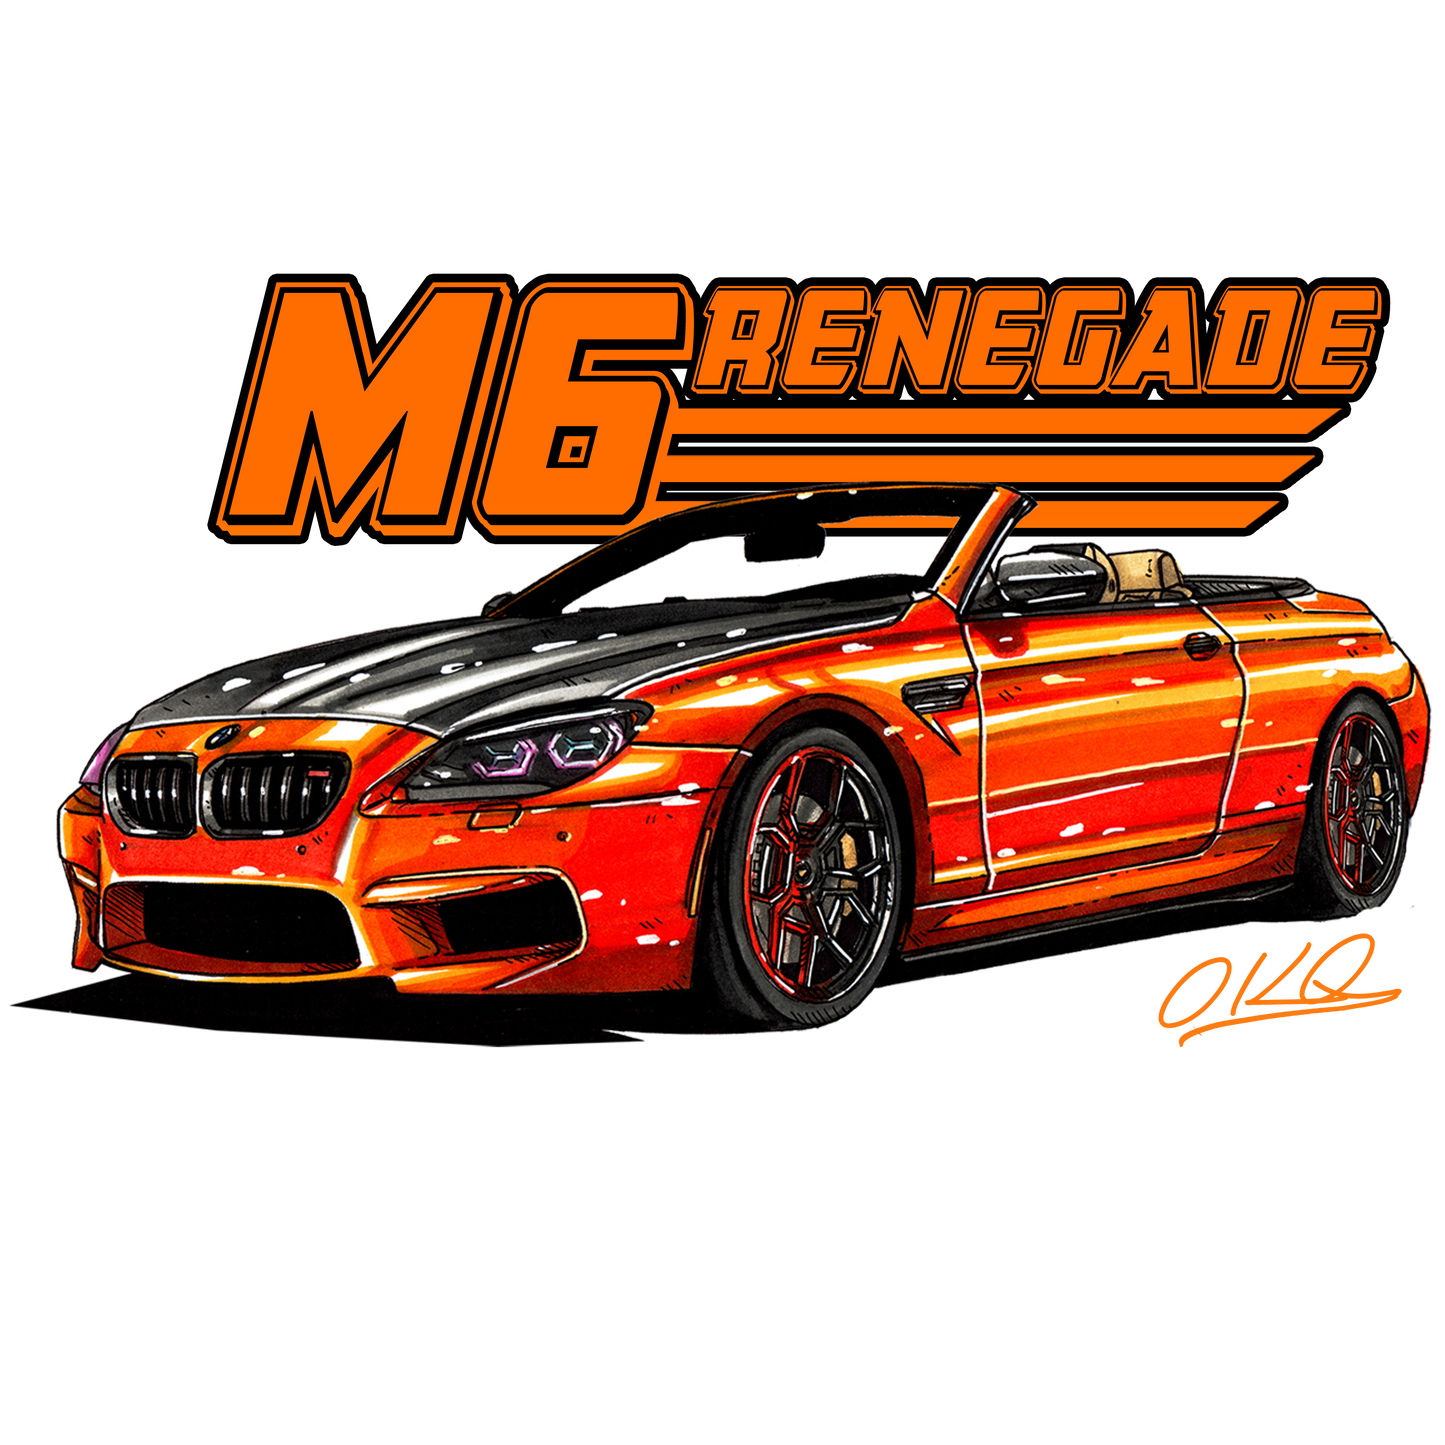 M6 Renegade Digital Image